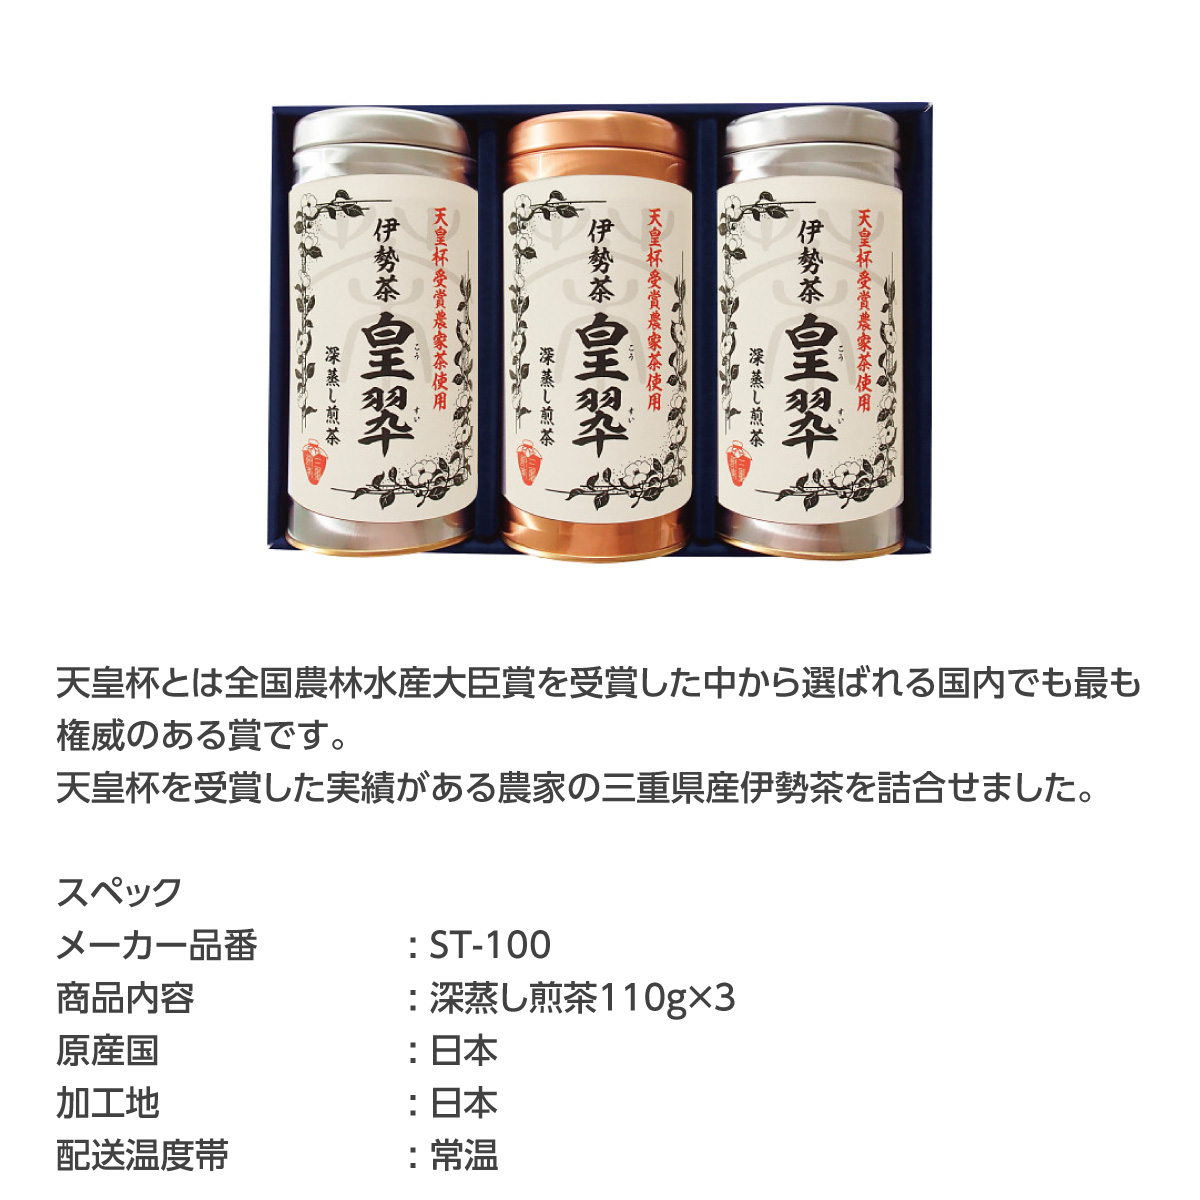 伊勢園 天皇杯受賞生産組合の深蒸し茶 - 緑茶、日本茶